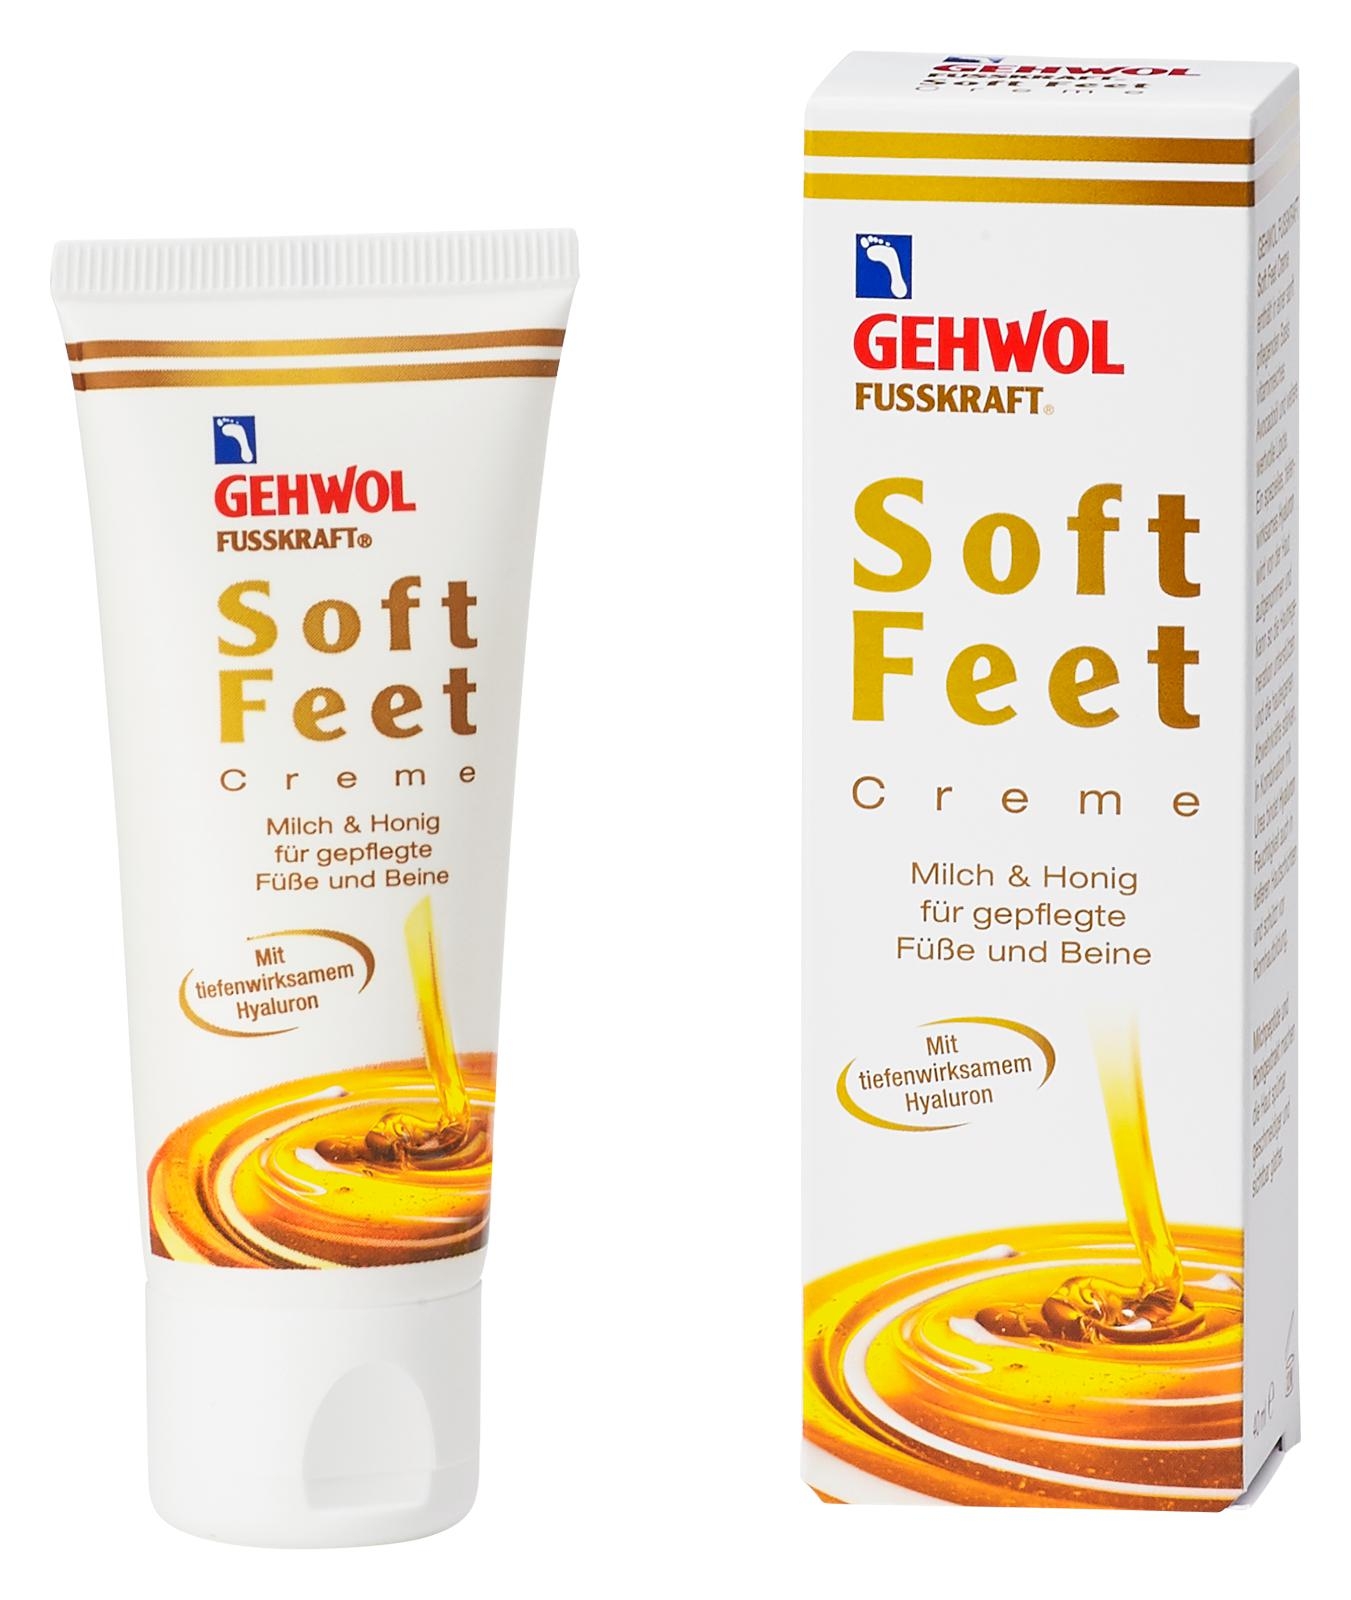 GEHWOL FUSSKRAFT Soft Feet Creme mit Milch & Honig 125 ml